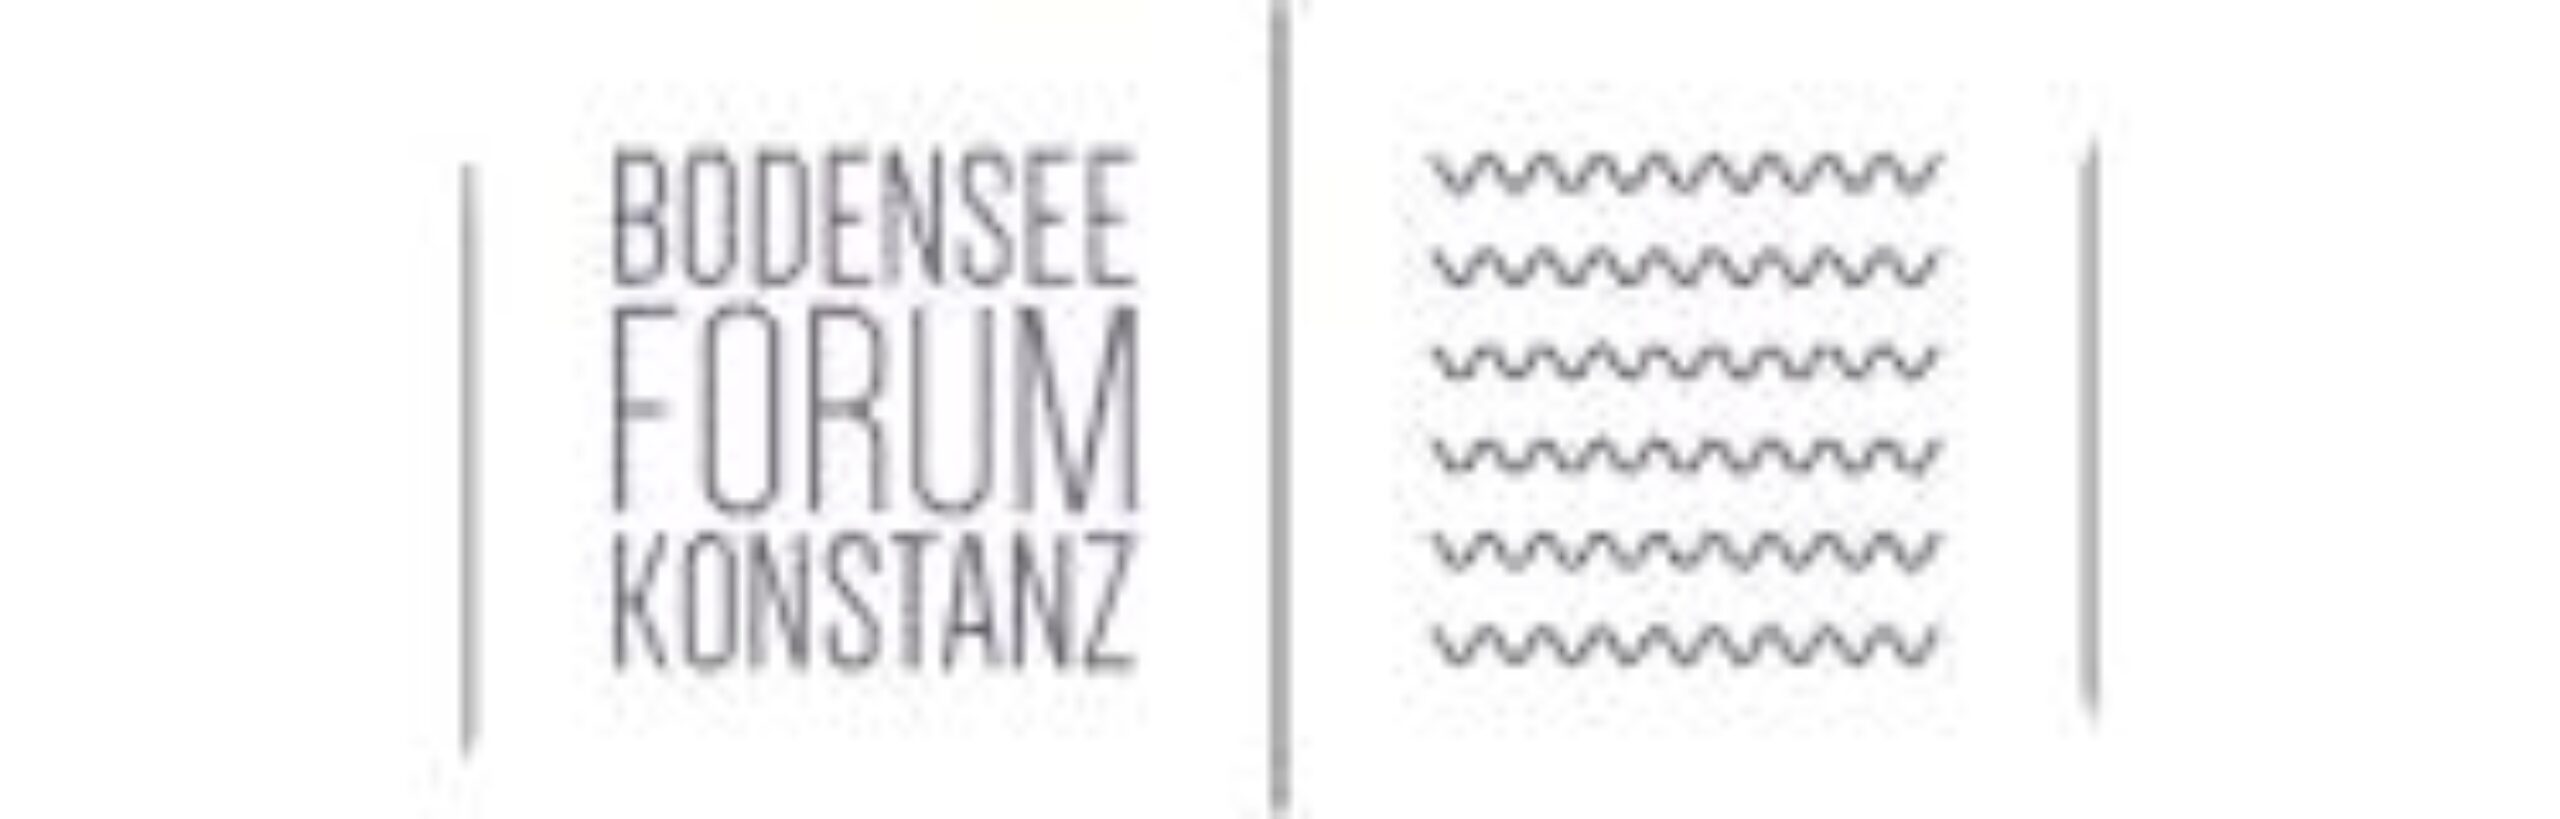 Bodensee Forum Konstanz logo